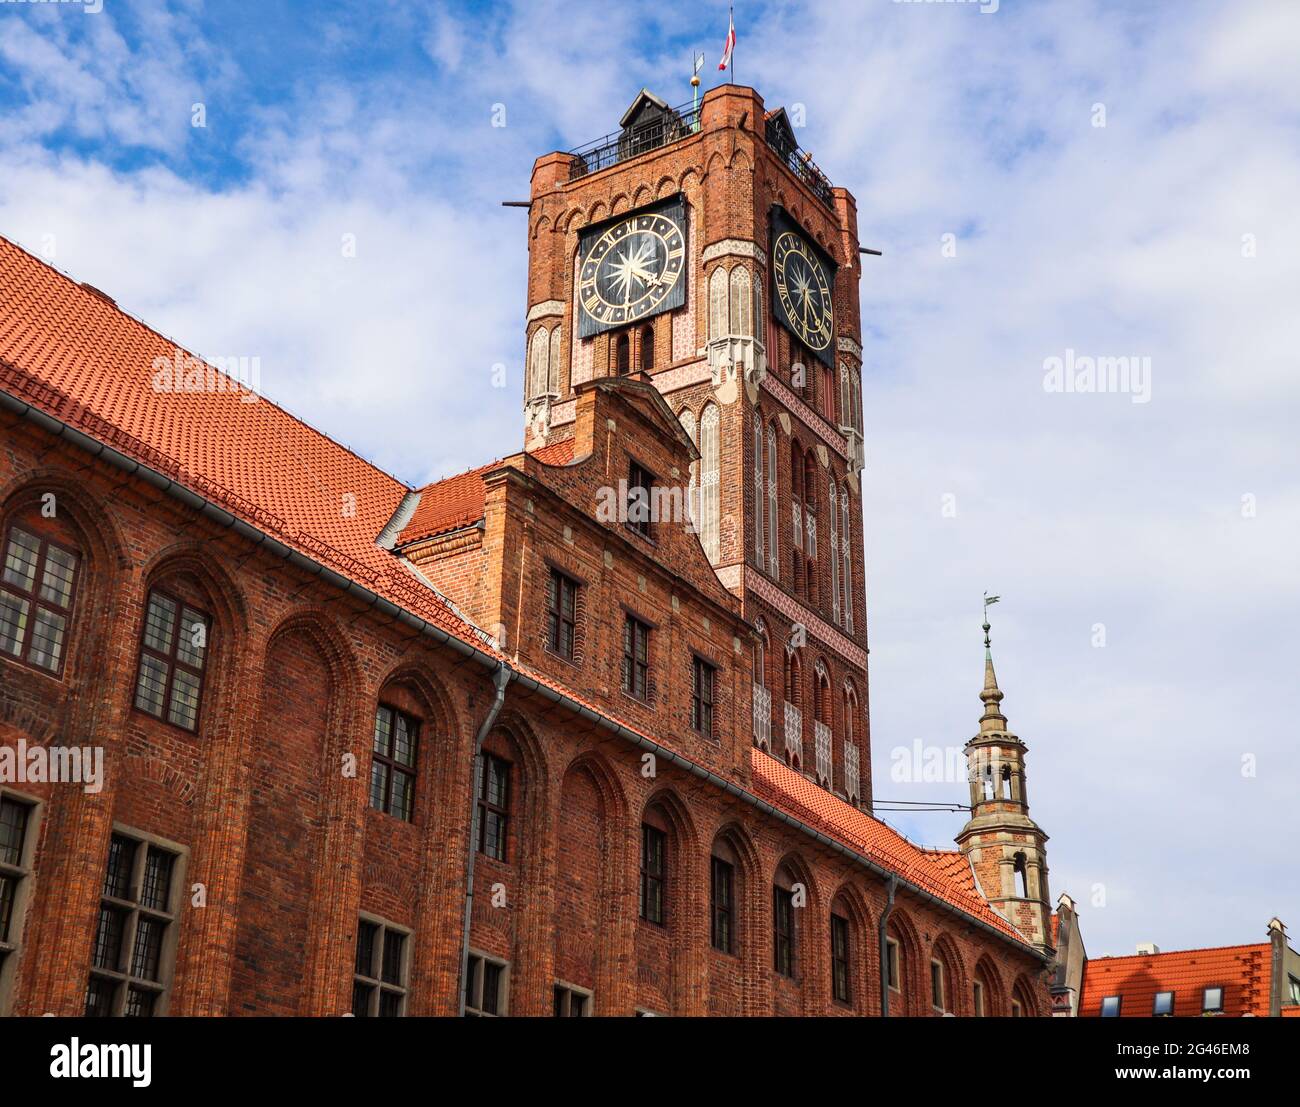 Turm des Alten Rathauses (ratusz Staromiejski) in Torun, Polen. August 2019 Stockfoto